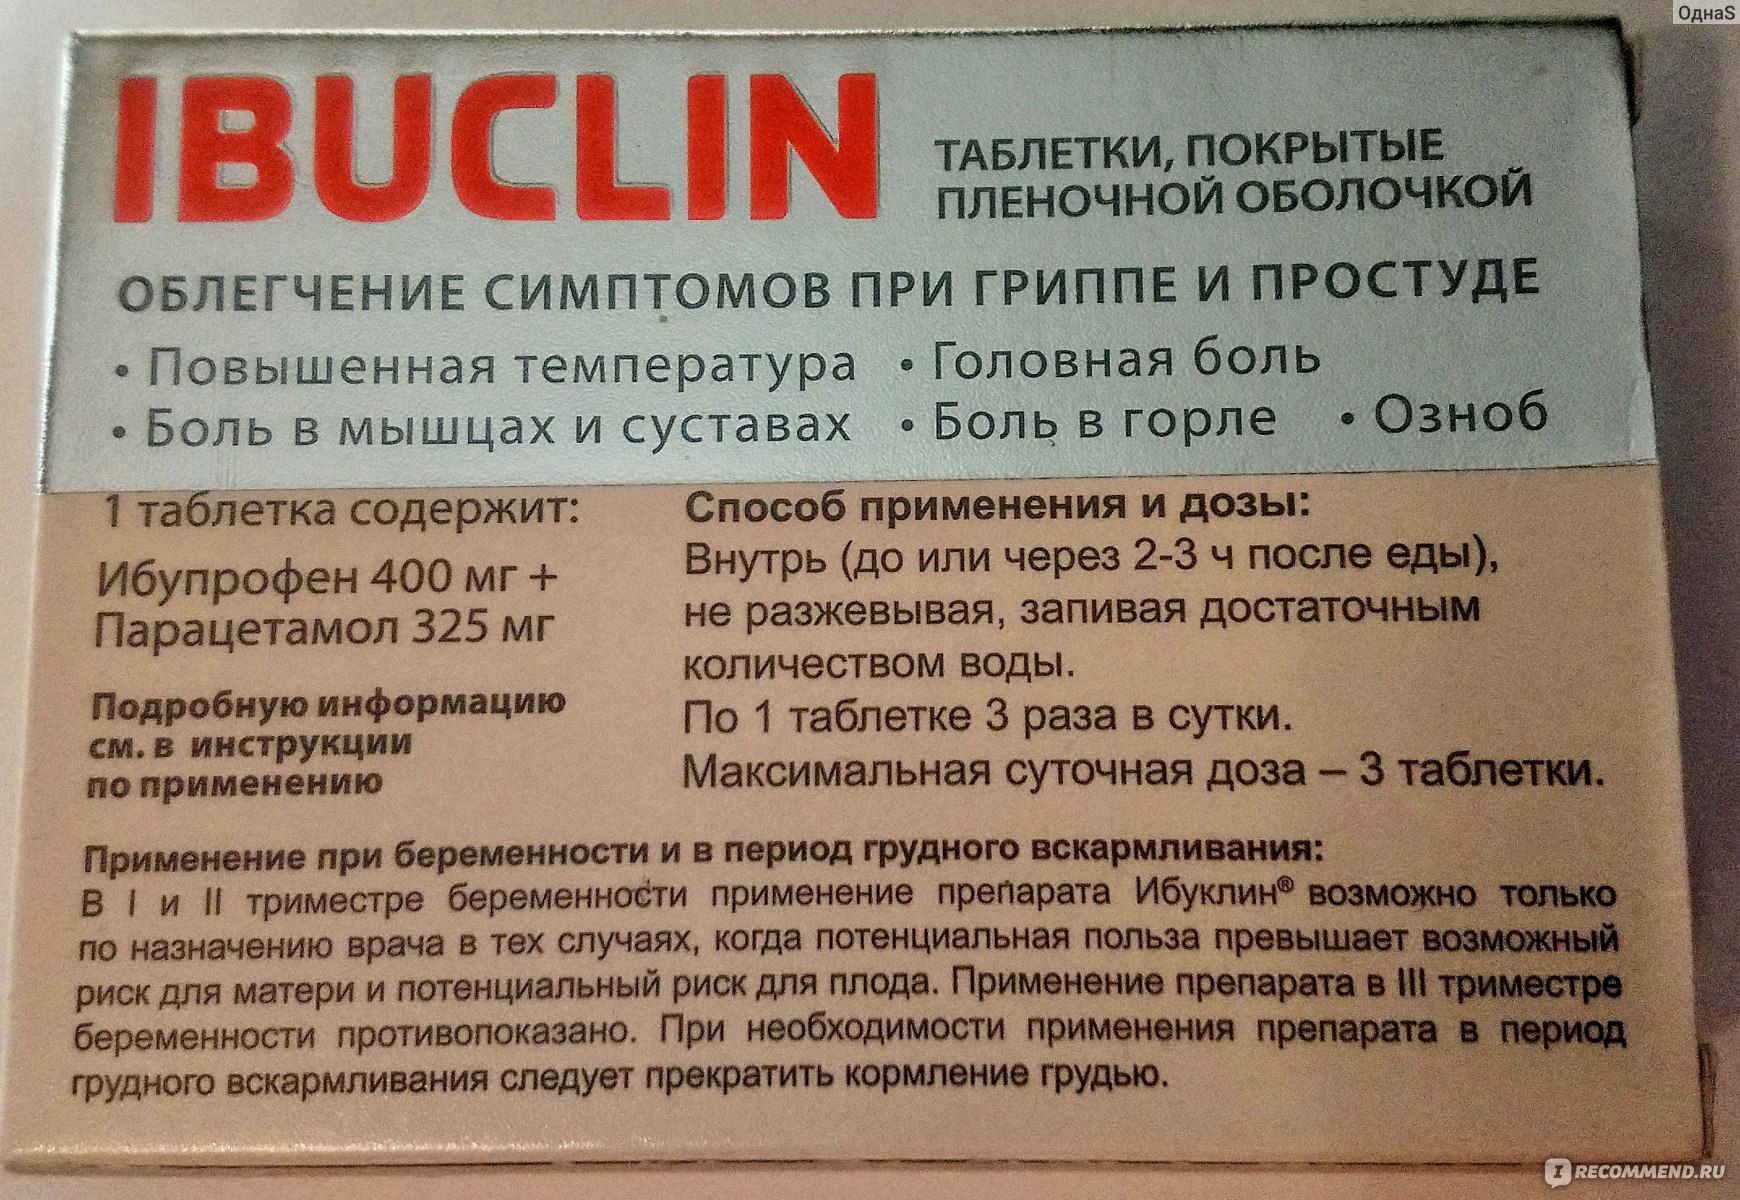 Сколько раз пьют ибуклин. Ибуклин 400/325. Ибуклин таблетки инструкция. Таблетки от простуды ибуклин. Буклин от чего таблетки.